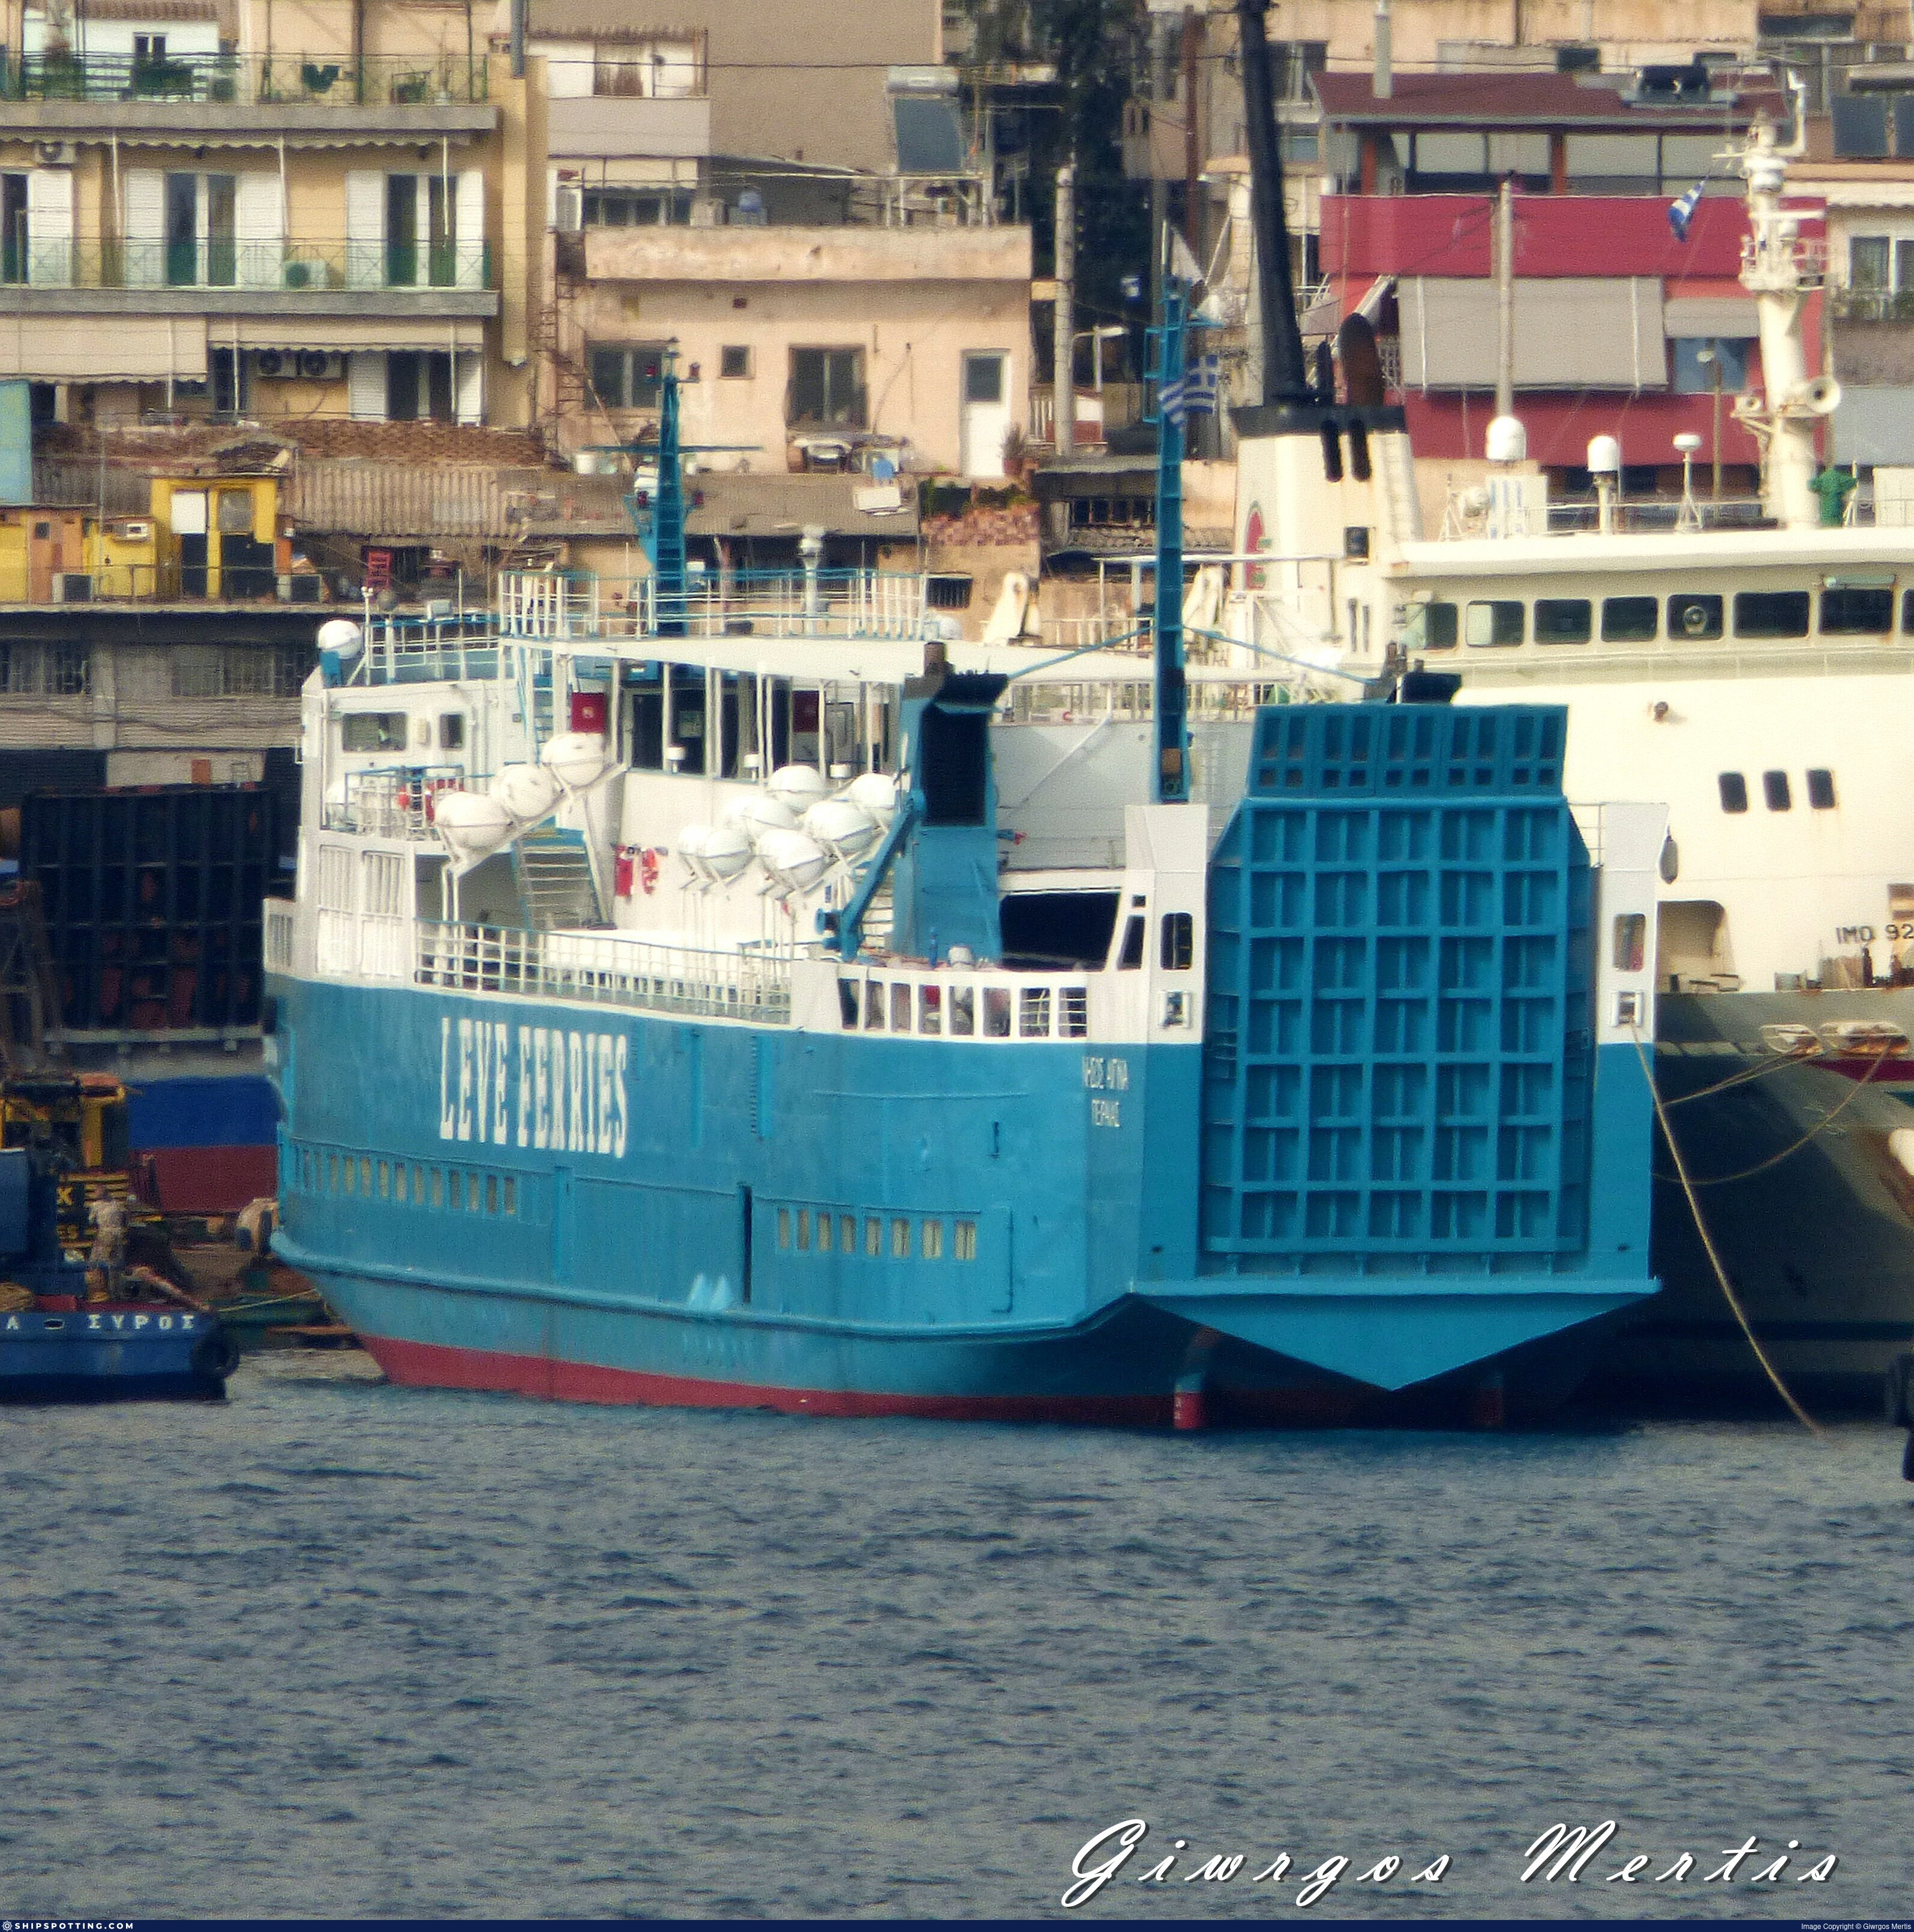 NISSOS AEGINA - IMO 7393066 - ShipSpotting.com - Ship Photos, Information,  Videos and Ship Tracker